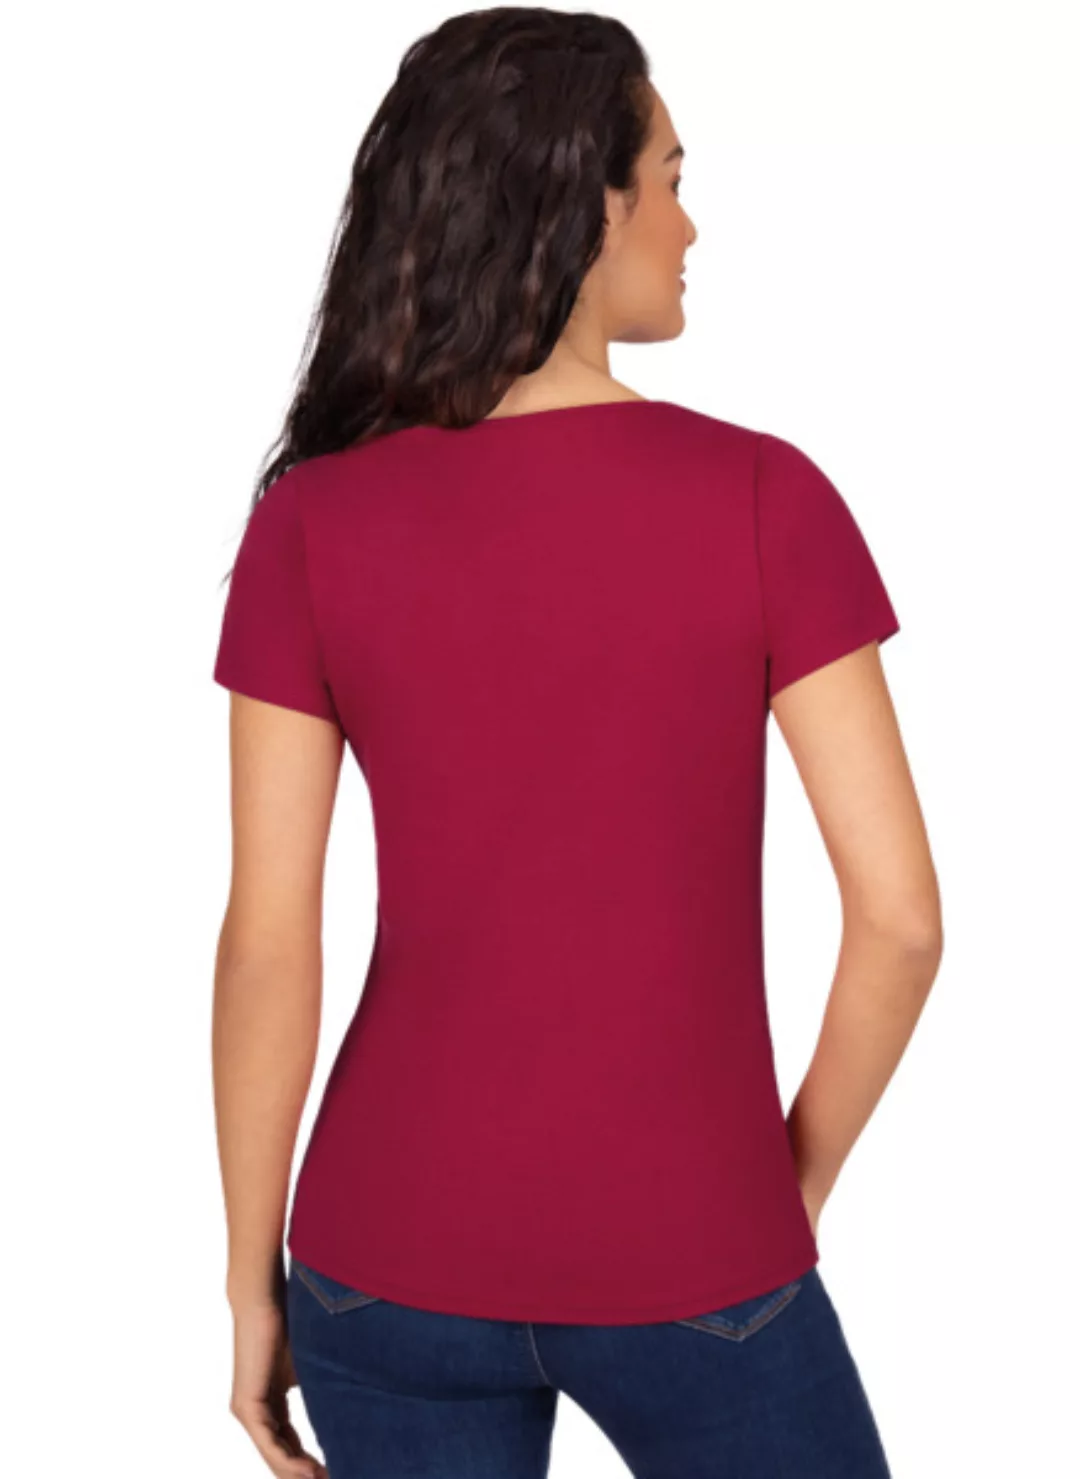 Schickes Damen T-shirt In Öko-qualität günstig online kaufen